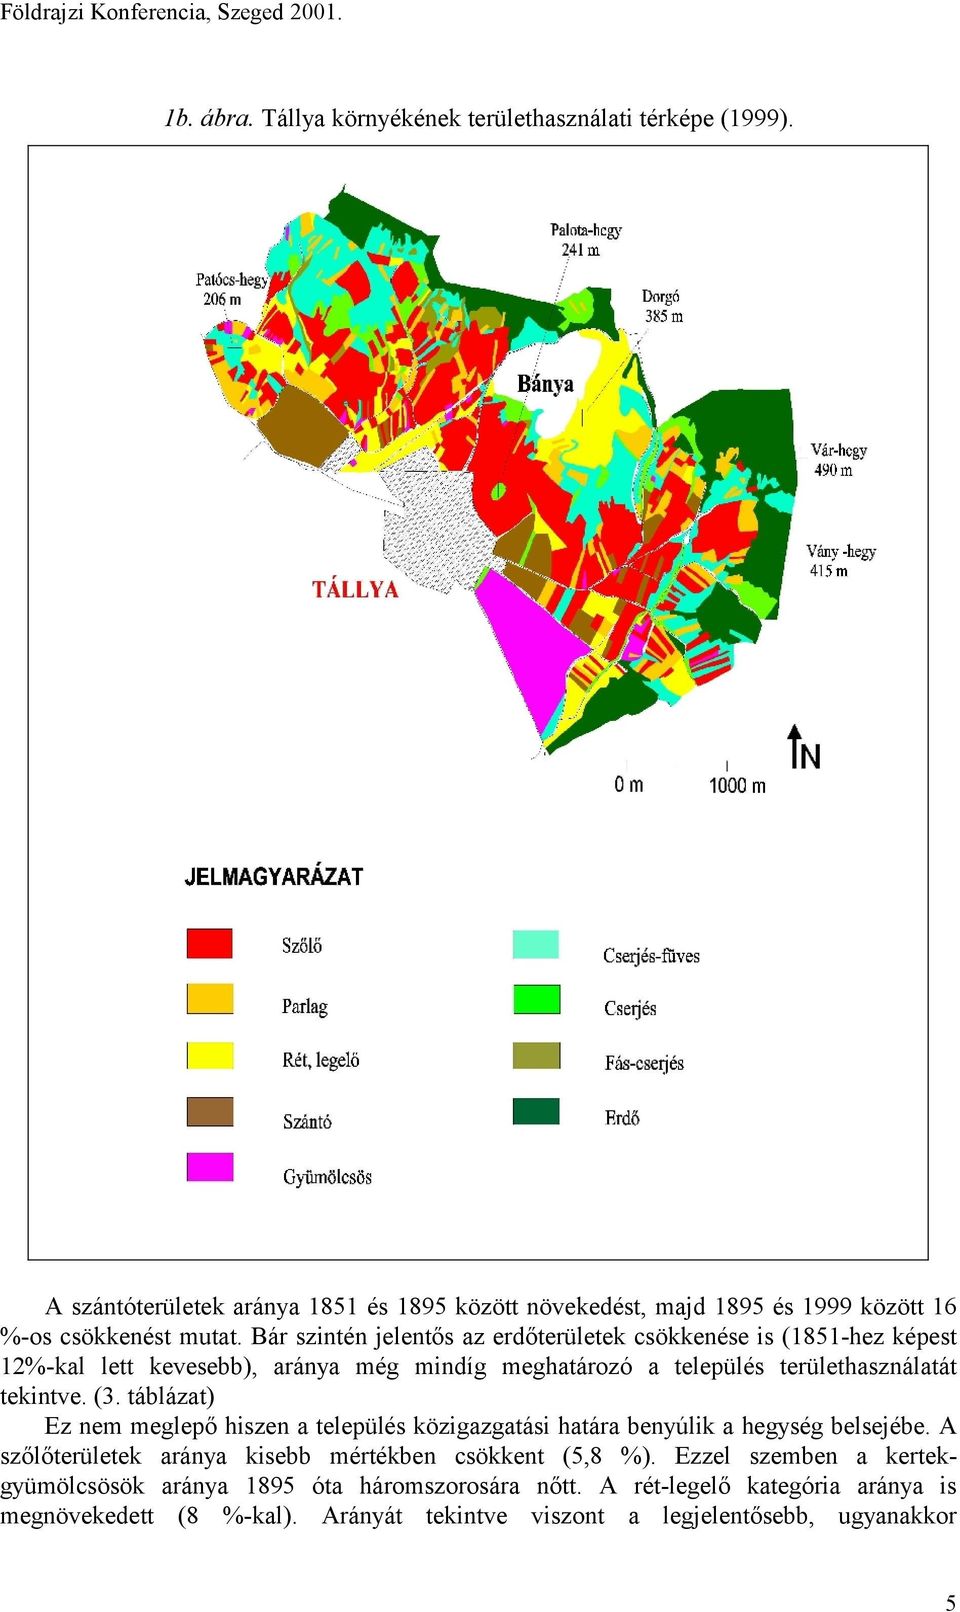 táblázat) Ez nem meglepő hiszen a település közigazgatási határa benyúlik a hegység belsejébe. A szőlőterületek aránya kisebb mértékben csökkent (5,8 %).